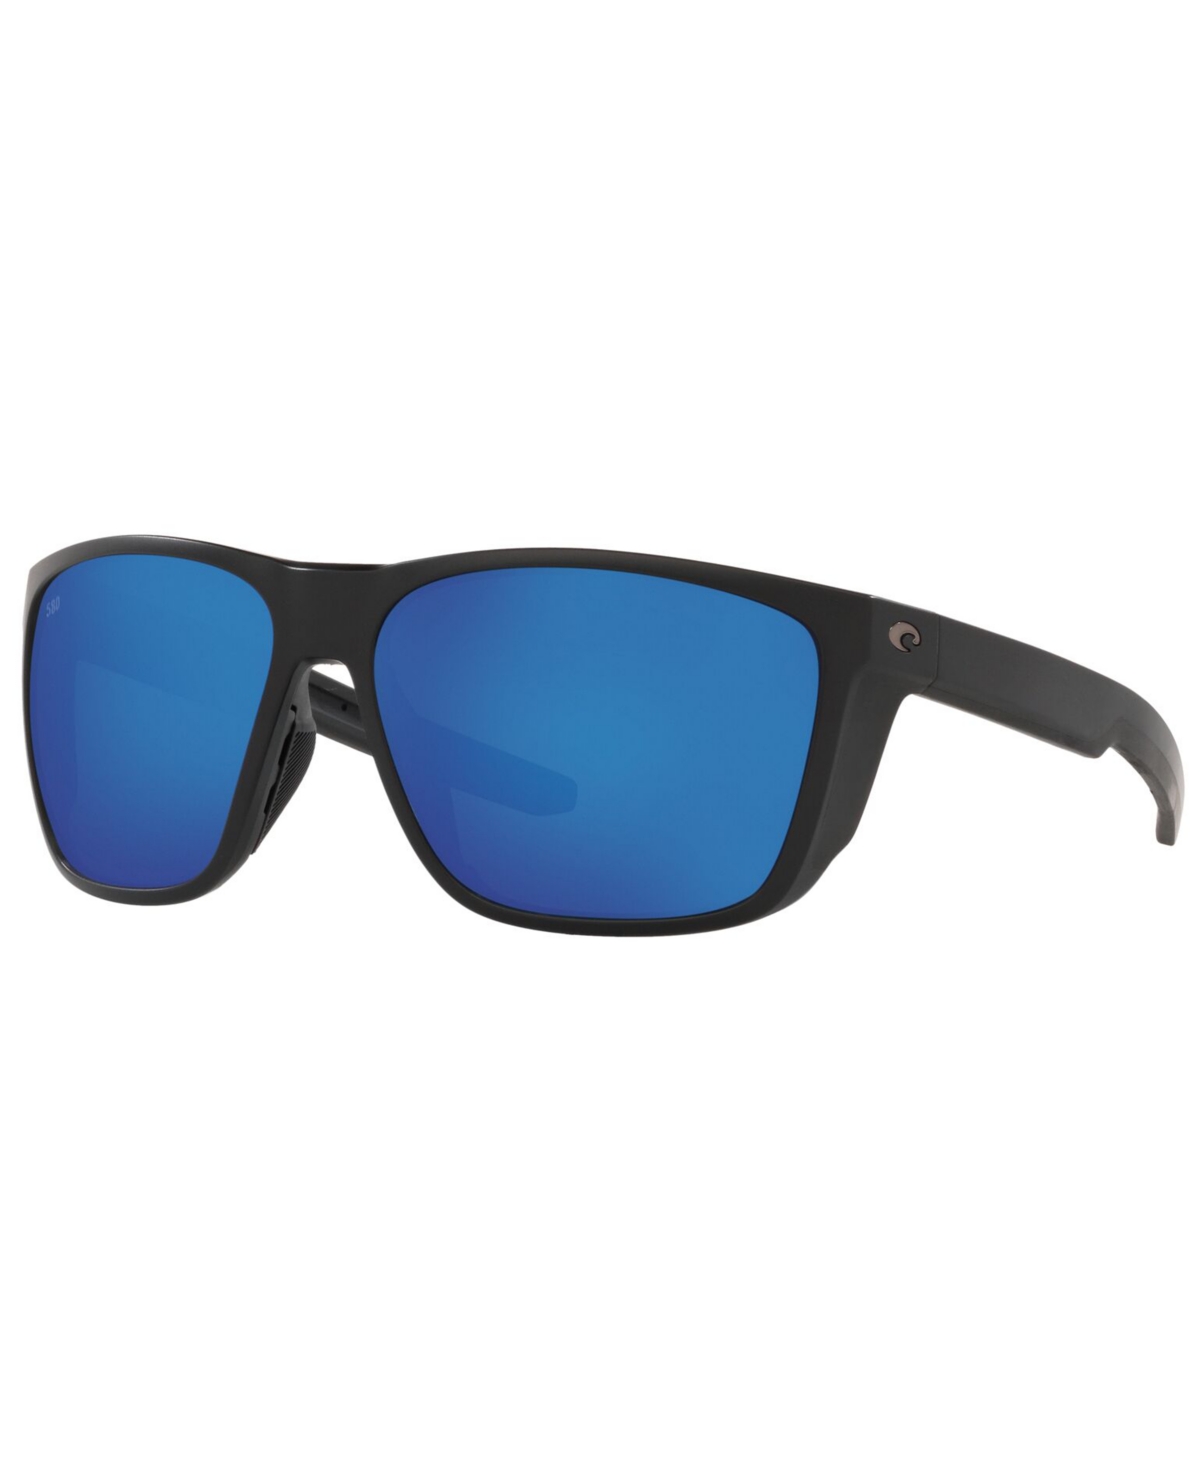 Costa Del Mar Ferg Xl Polarized Sunglasses, 6s9012 62 In Matte Black,blue Mirror G